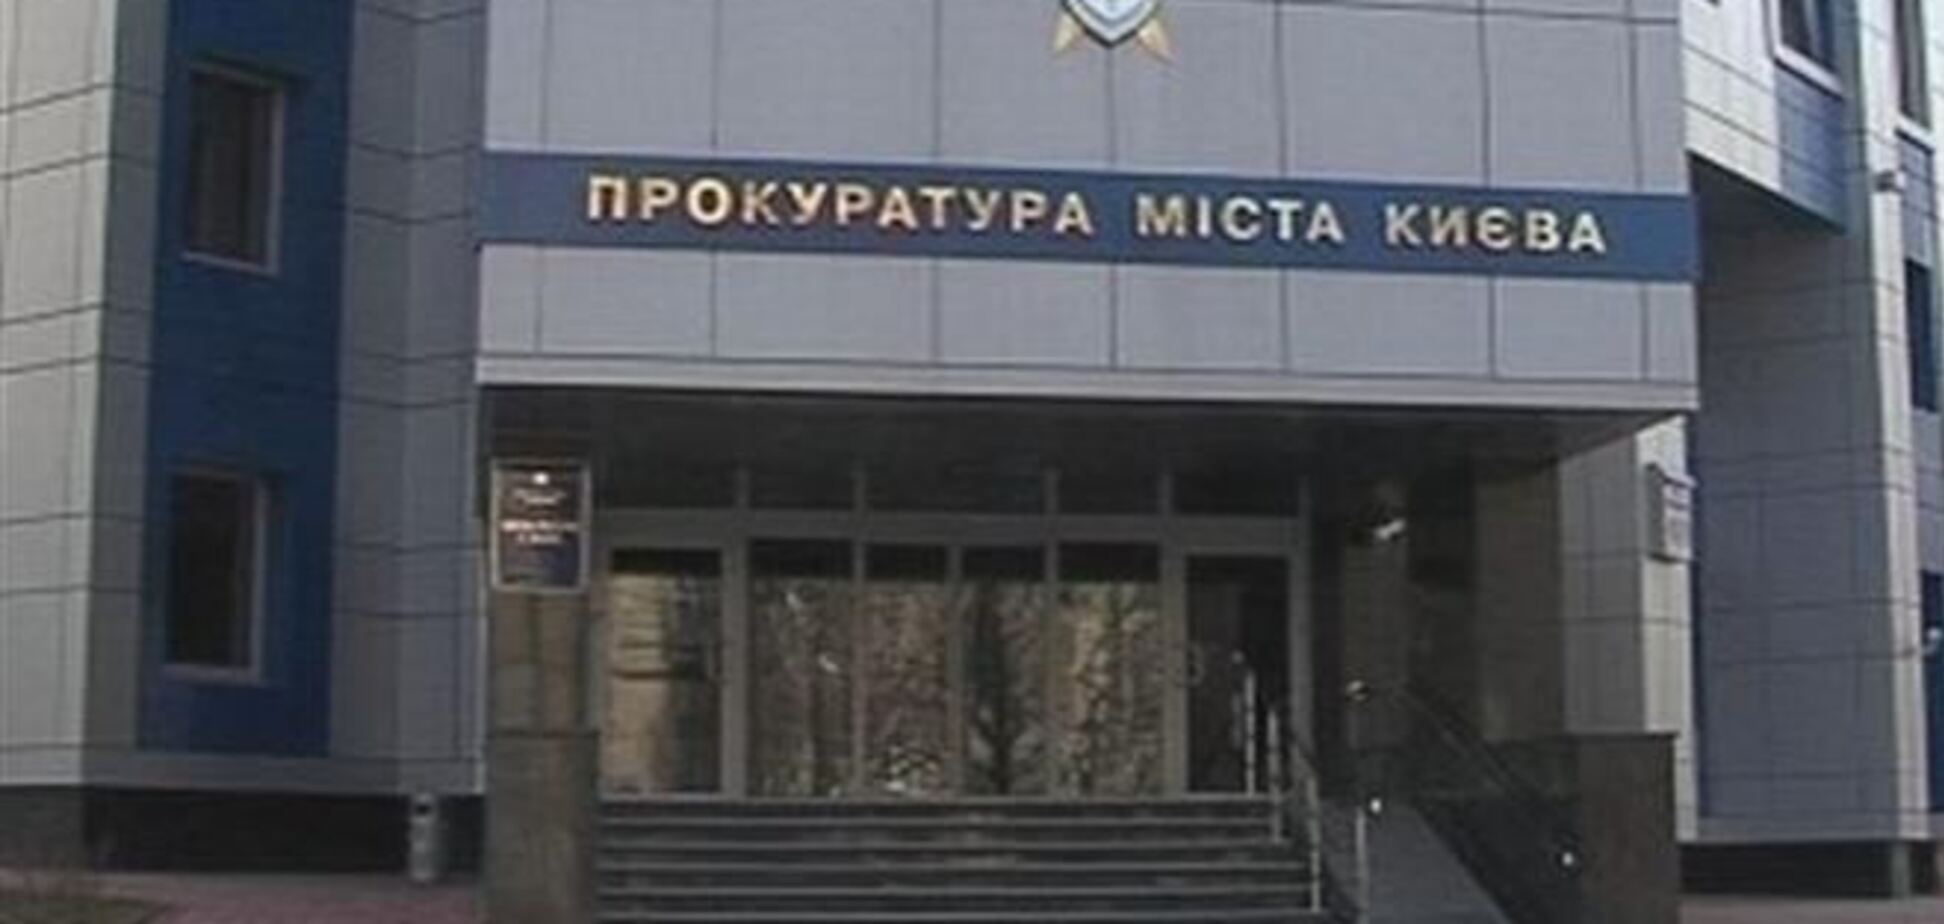 Прокуратура Киева объявила в розыск экс-главу 'Укринбанка'